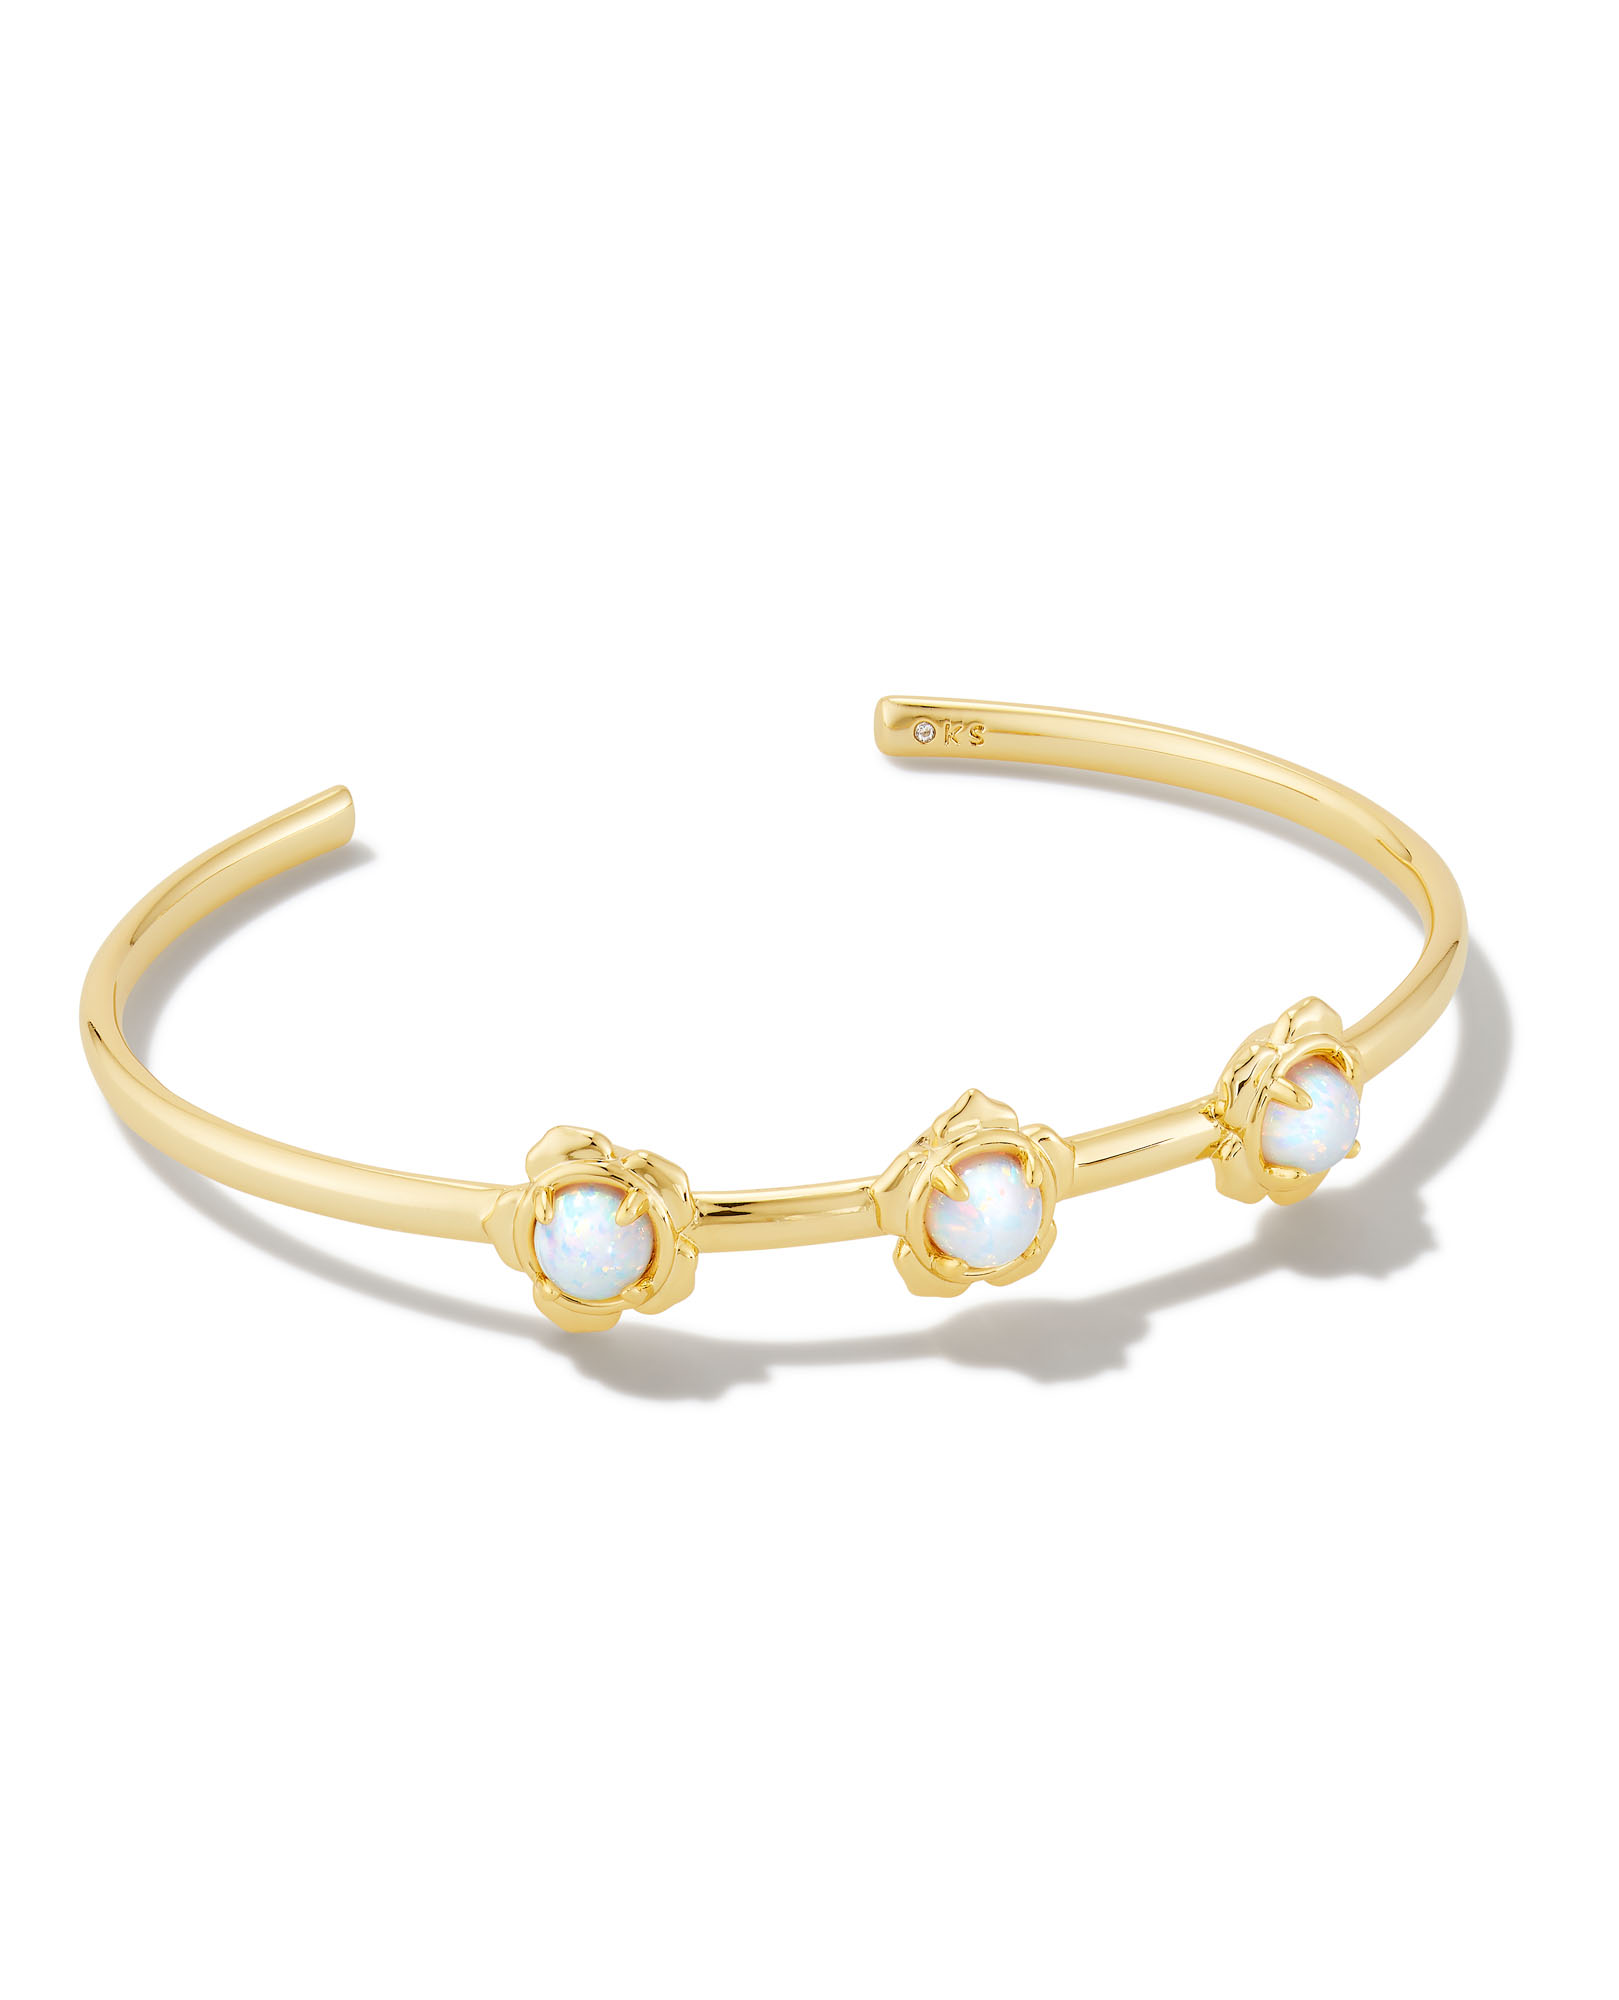 Susie Gold Cuff Bracelet in Bright White Kyocera Opal | Kendra Scott